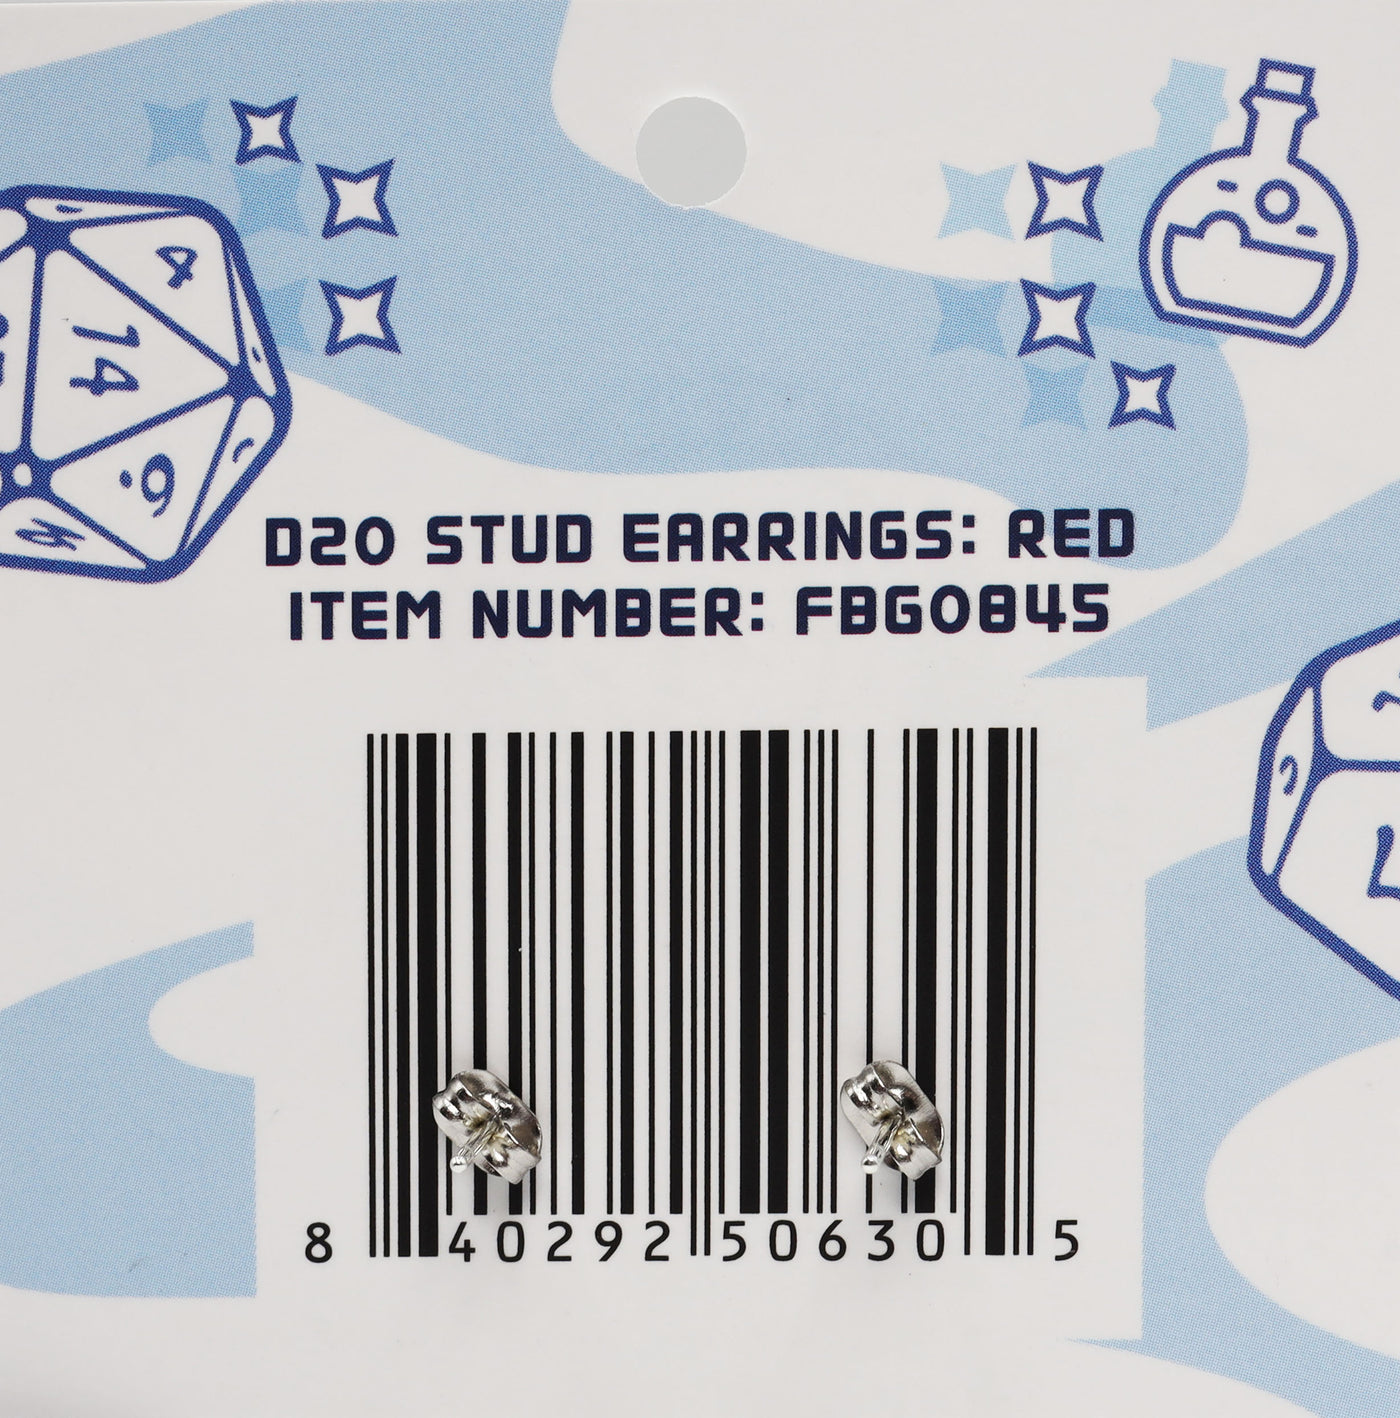 D20 Stud Earrings: Red Jewelry Foam Brain Games